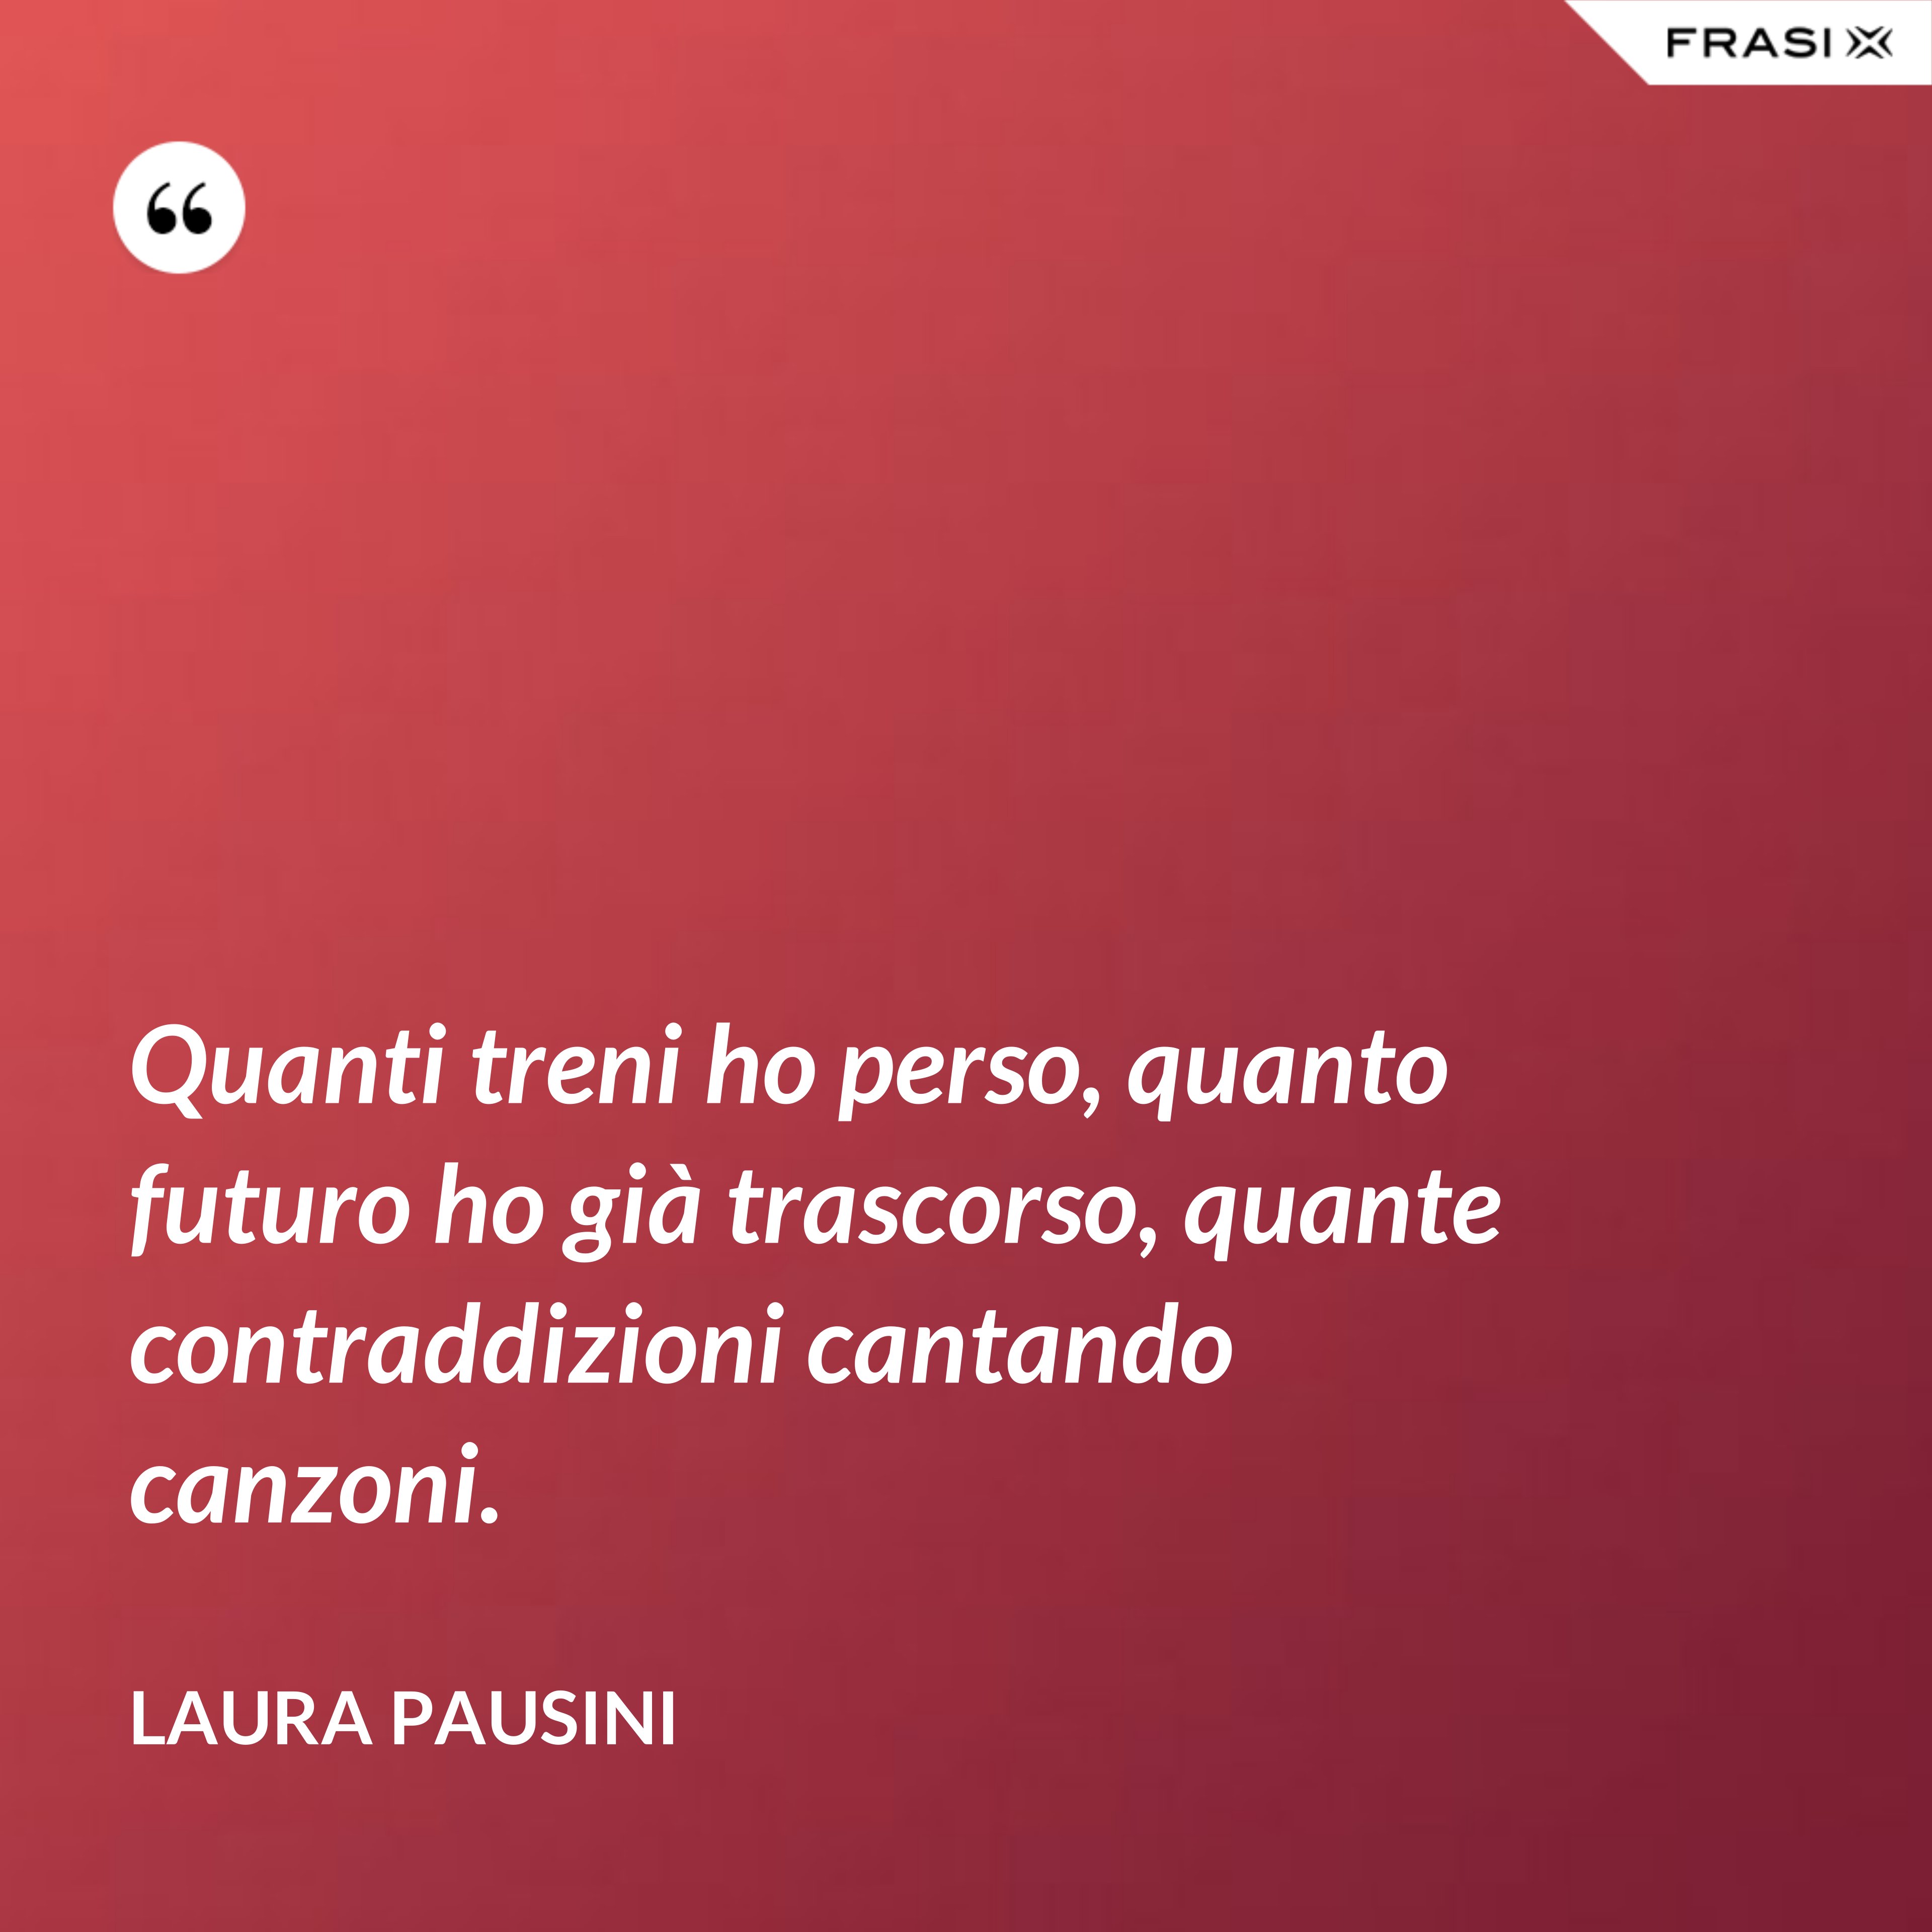 Quanti treni ho perso, quanto futuro ho già trascorso, quante contraddizioni cantando canzoni. - Laura Pausini